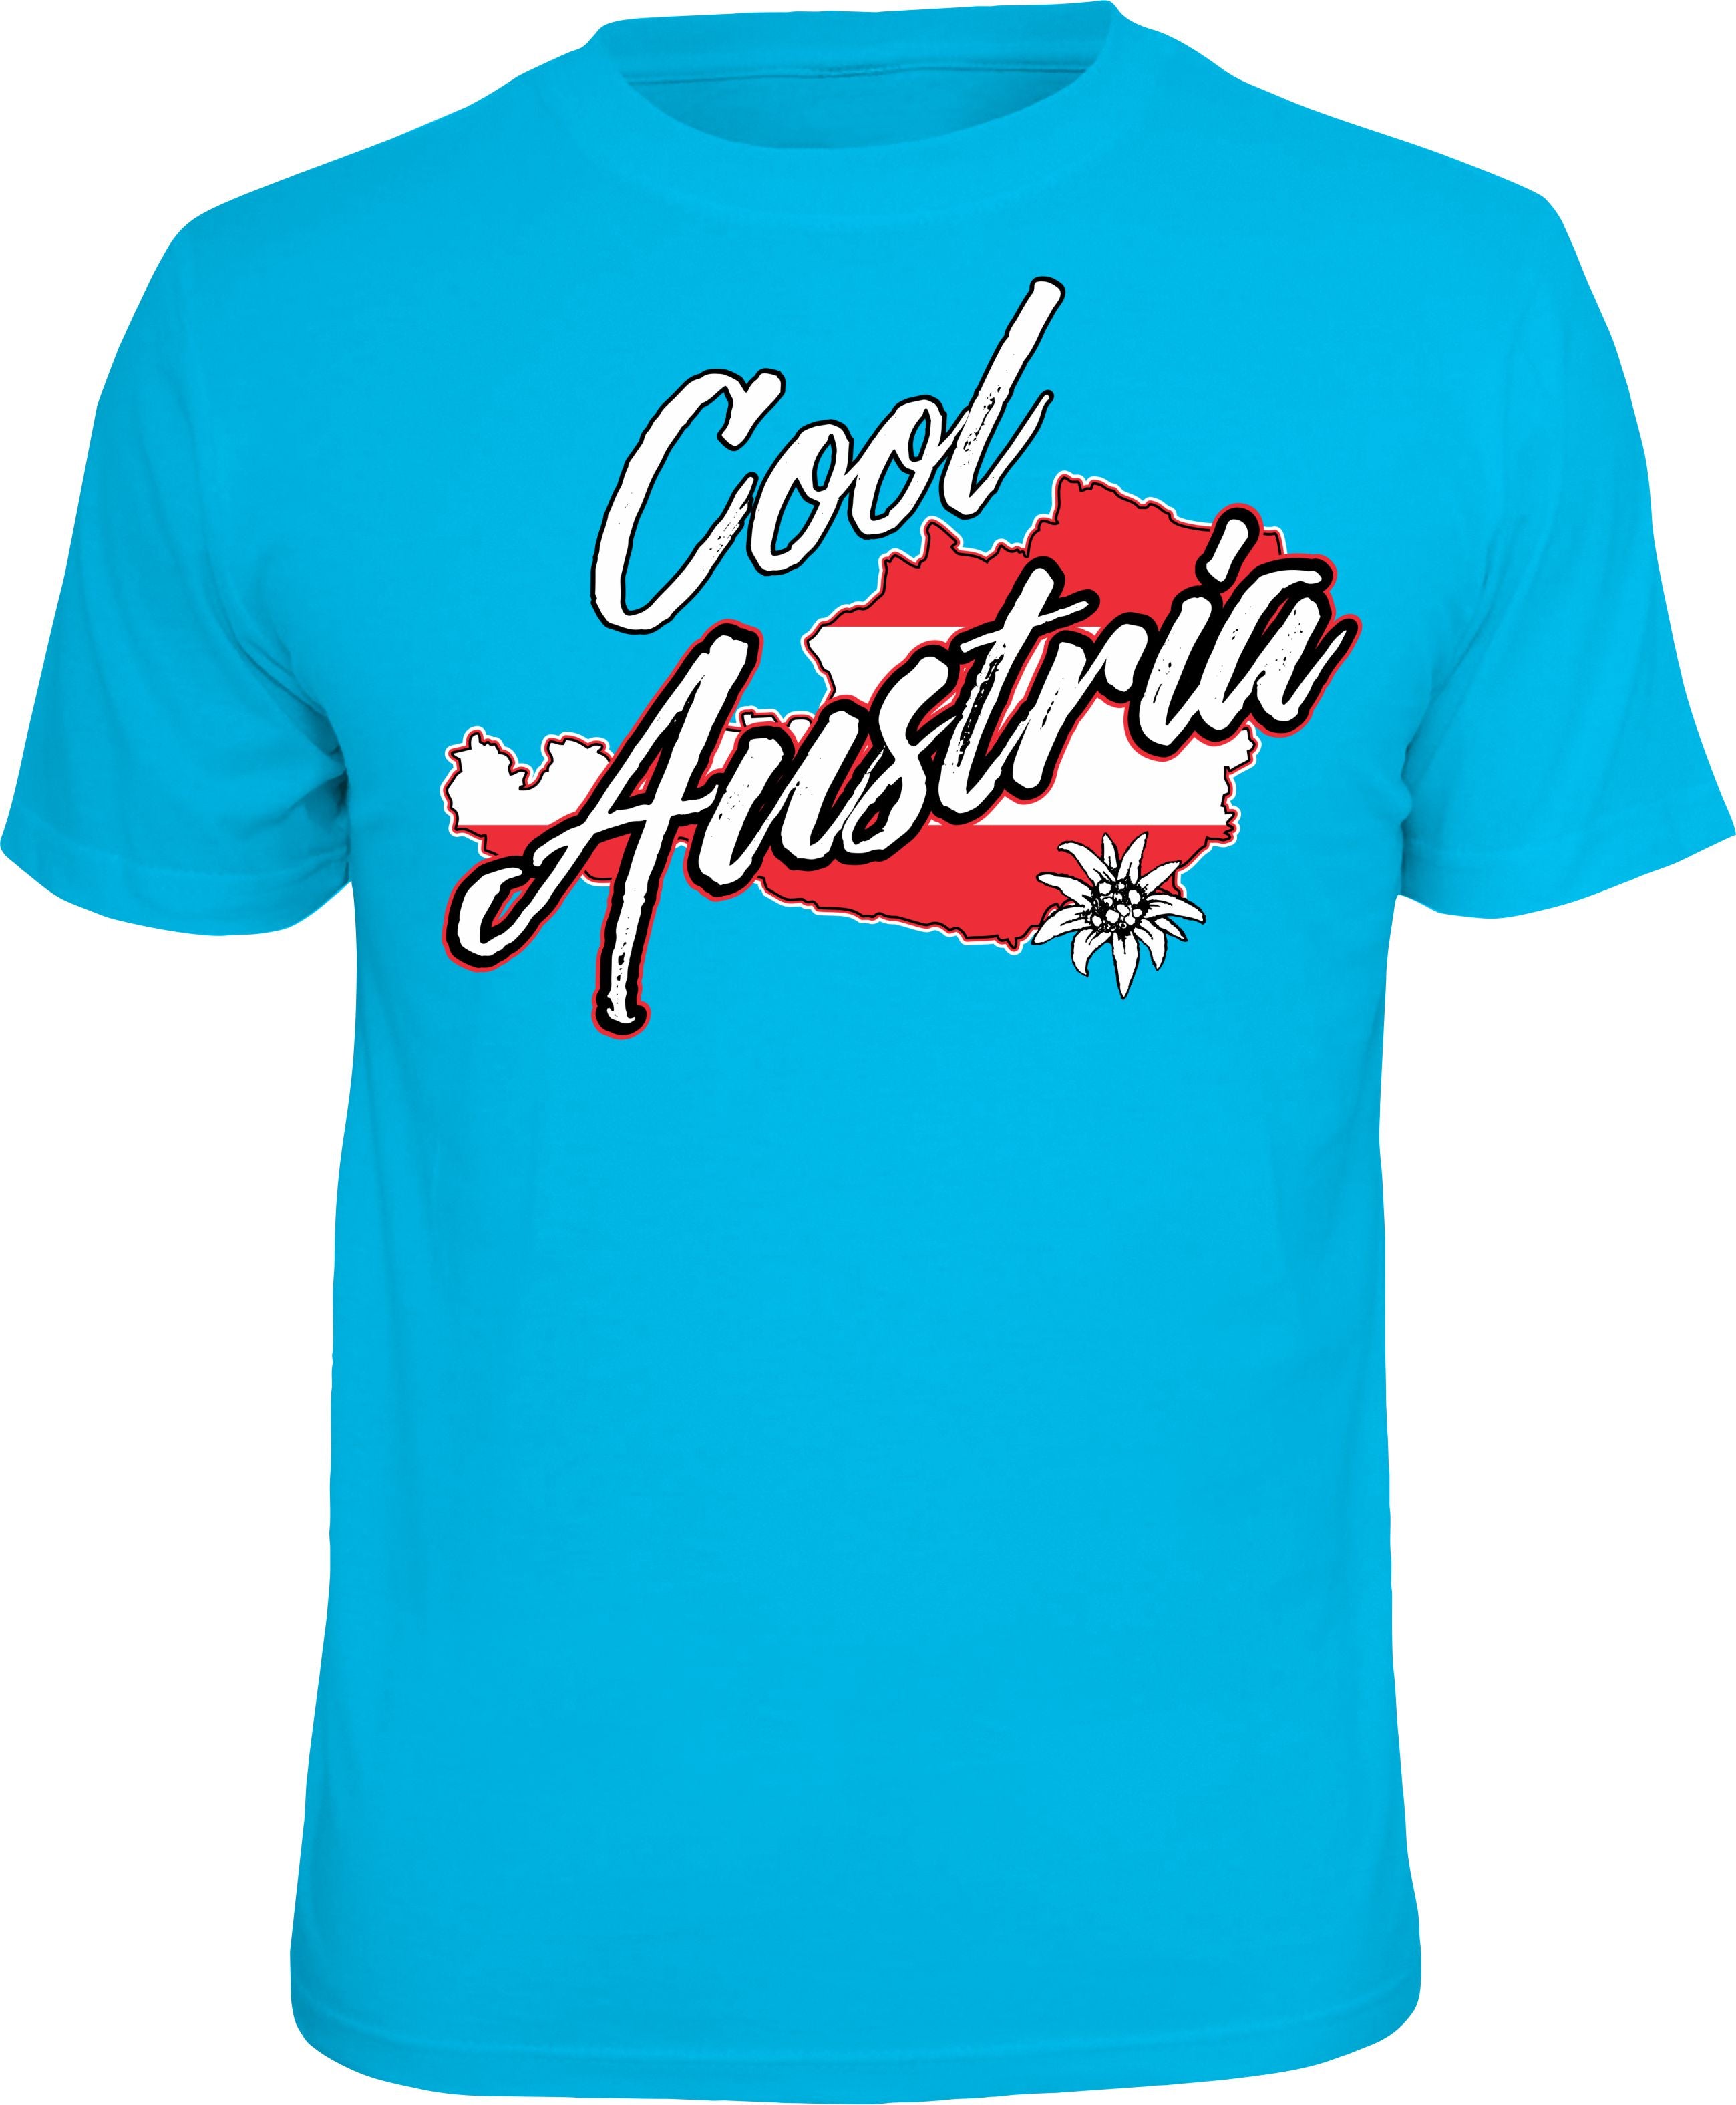 Herren Männer T-Shirt - Österreich - Cool Austria